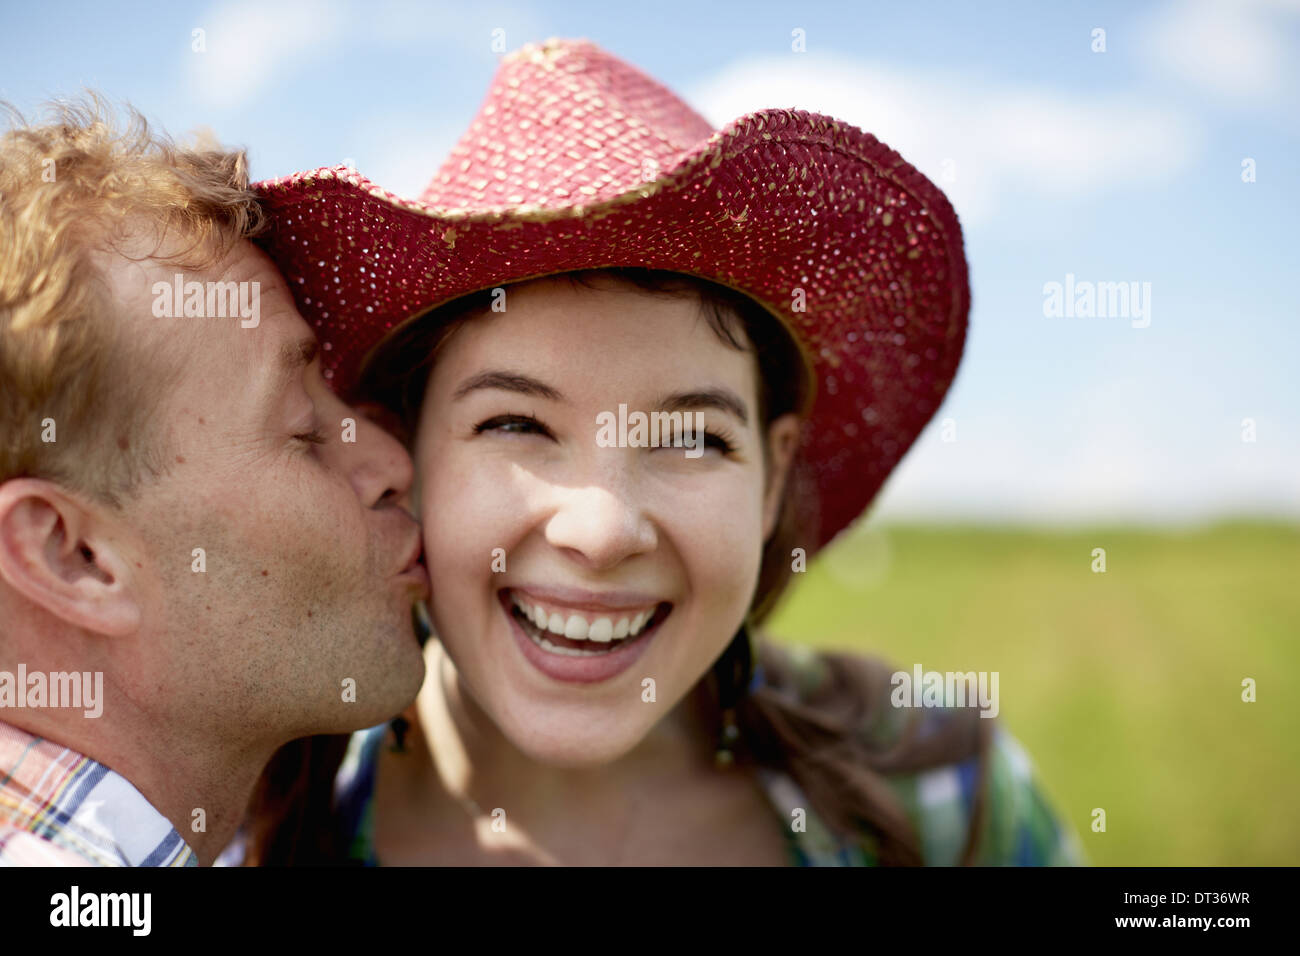 Eine junge Frau in einen breitkrempigen Hut wird von einem jungen Mann auf die Wange geküsst Stockfoto